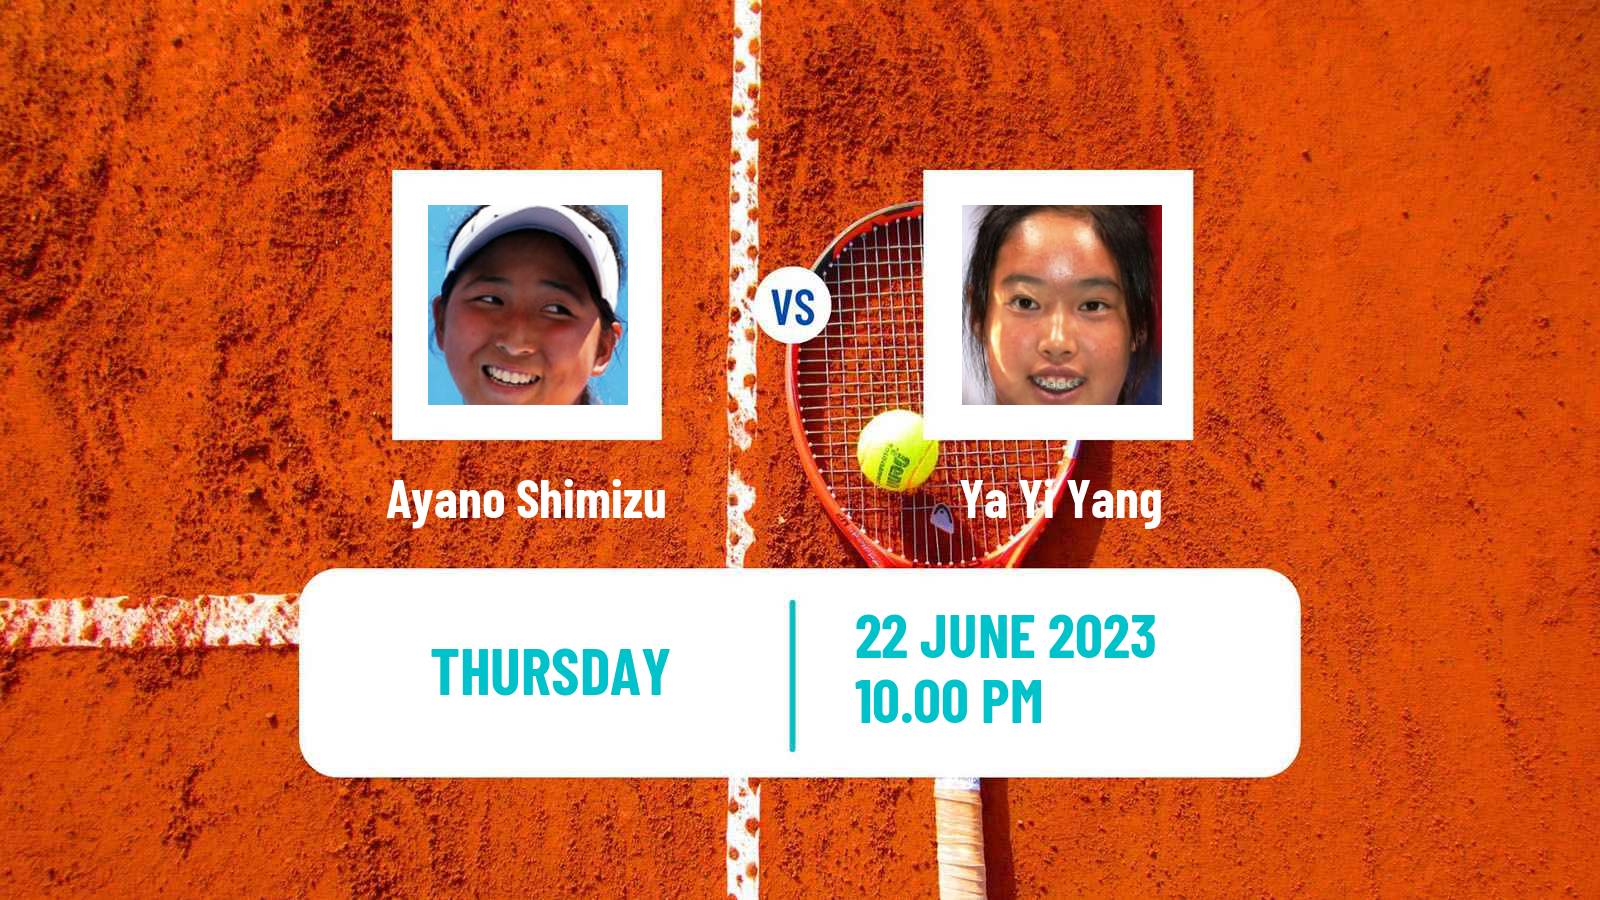 Tennis ITF W25 Tainan 2 Women Ayano Shimizu - Ya Yi Yang